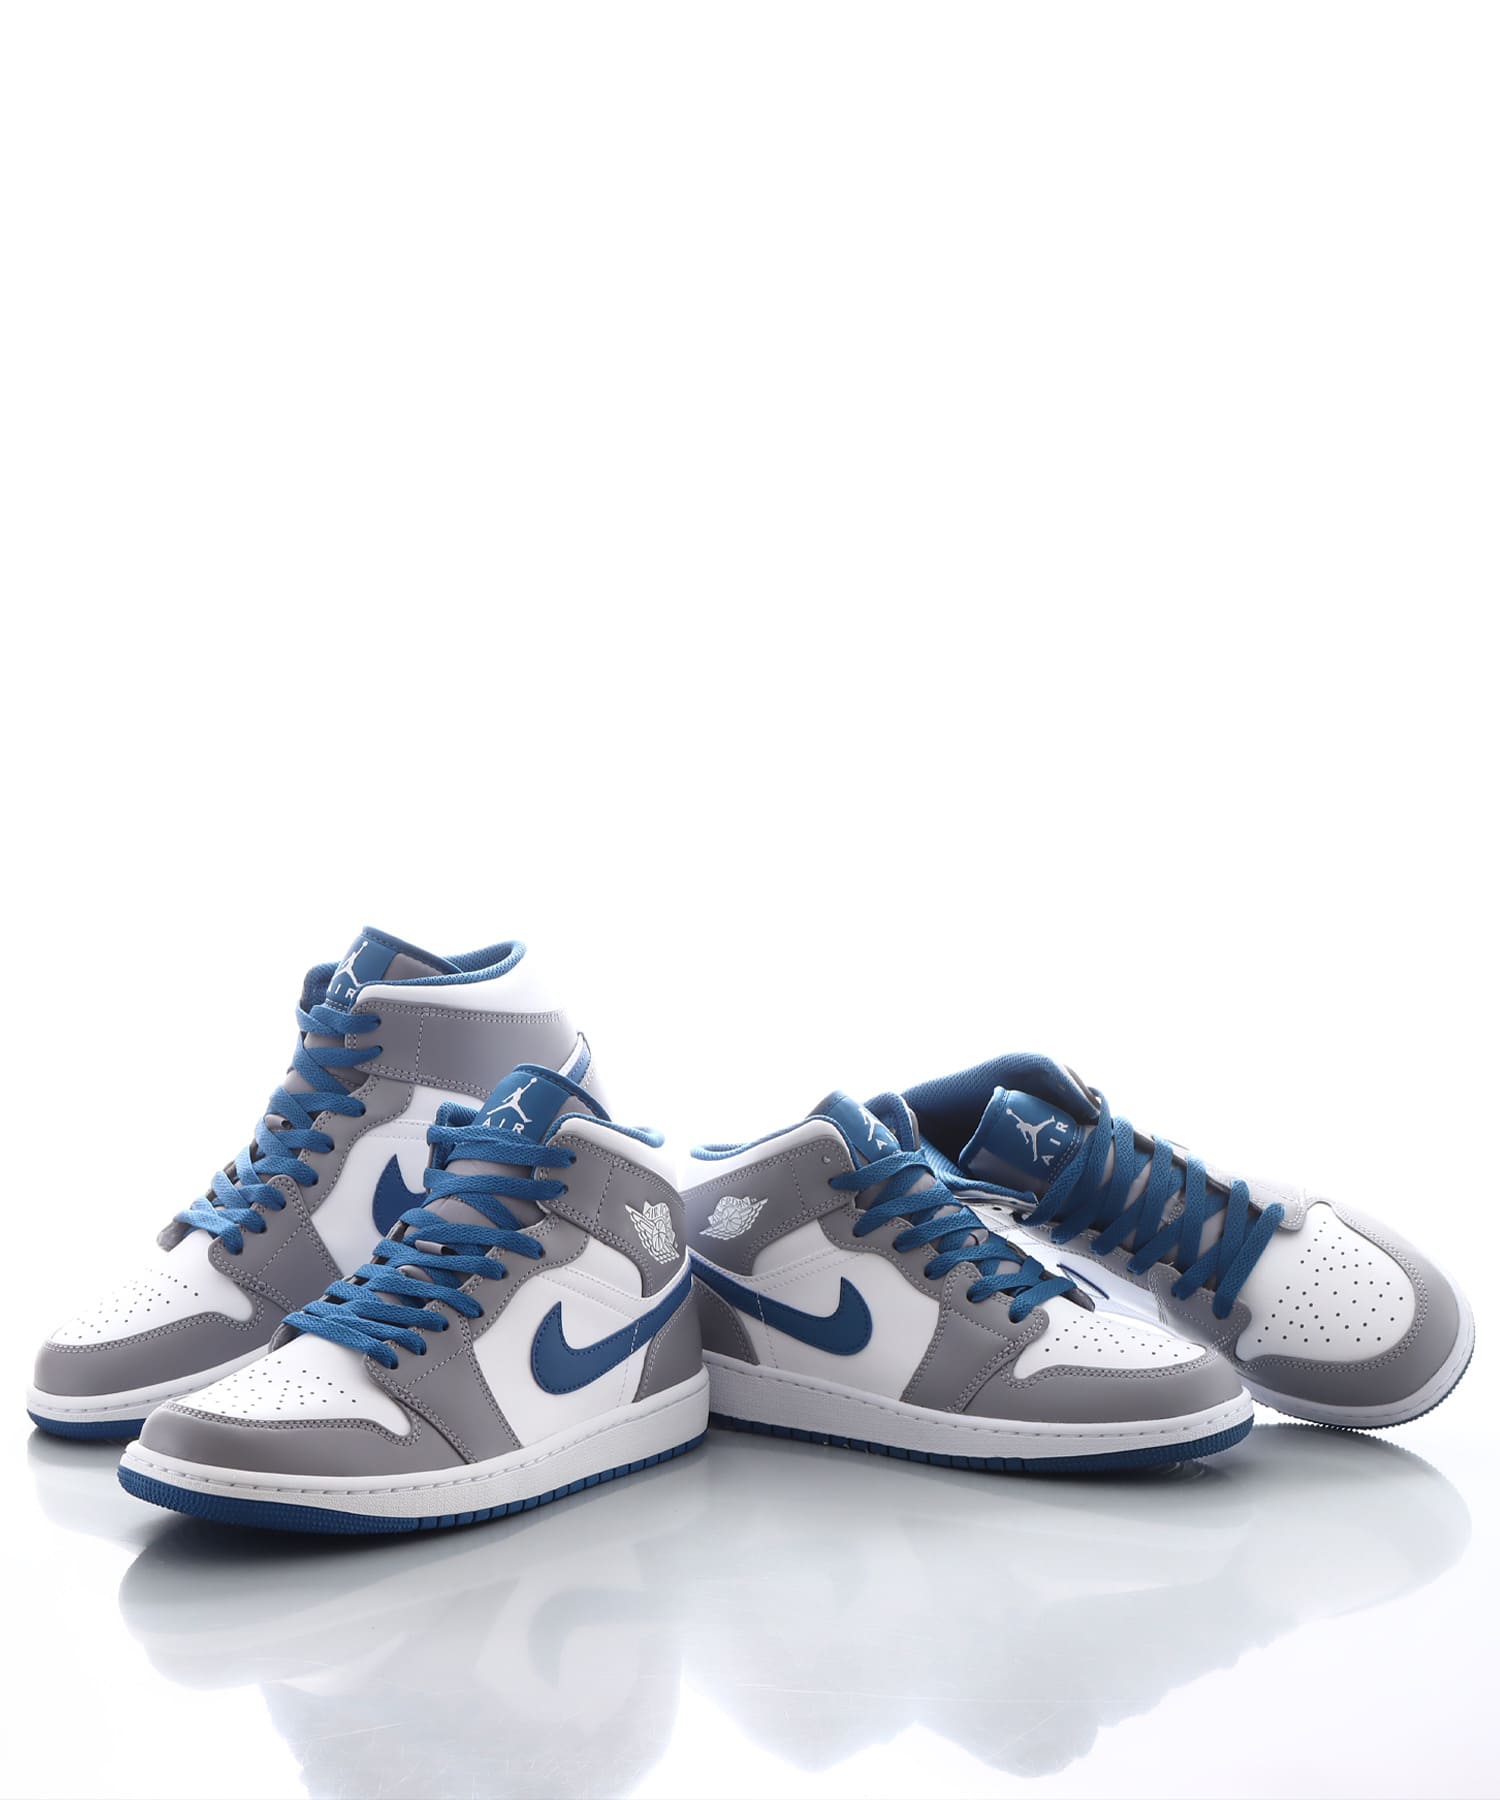 Nike Air Jordan 1 Mid "True Blue" 28.5cm